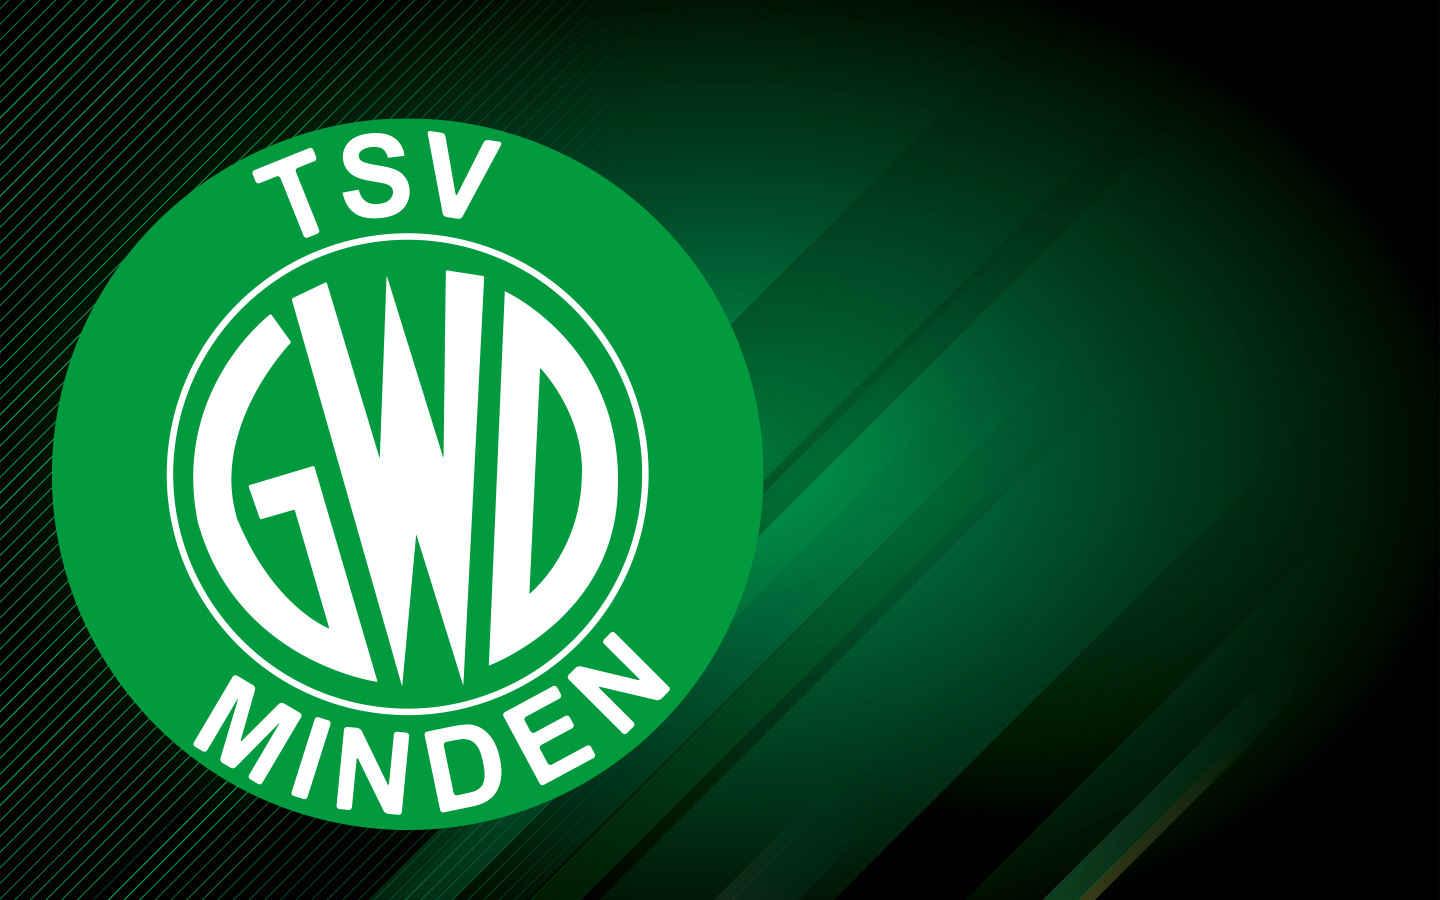 TSV GWD Minden e.V.